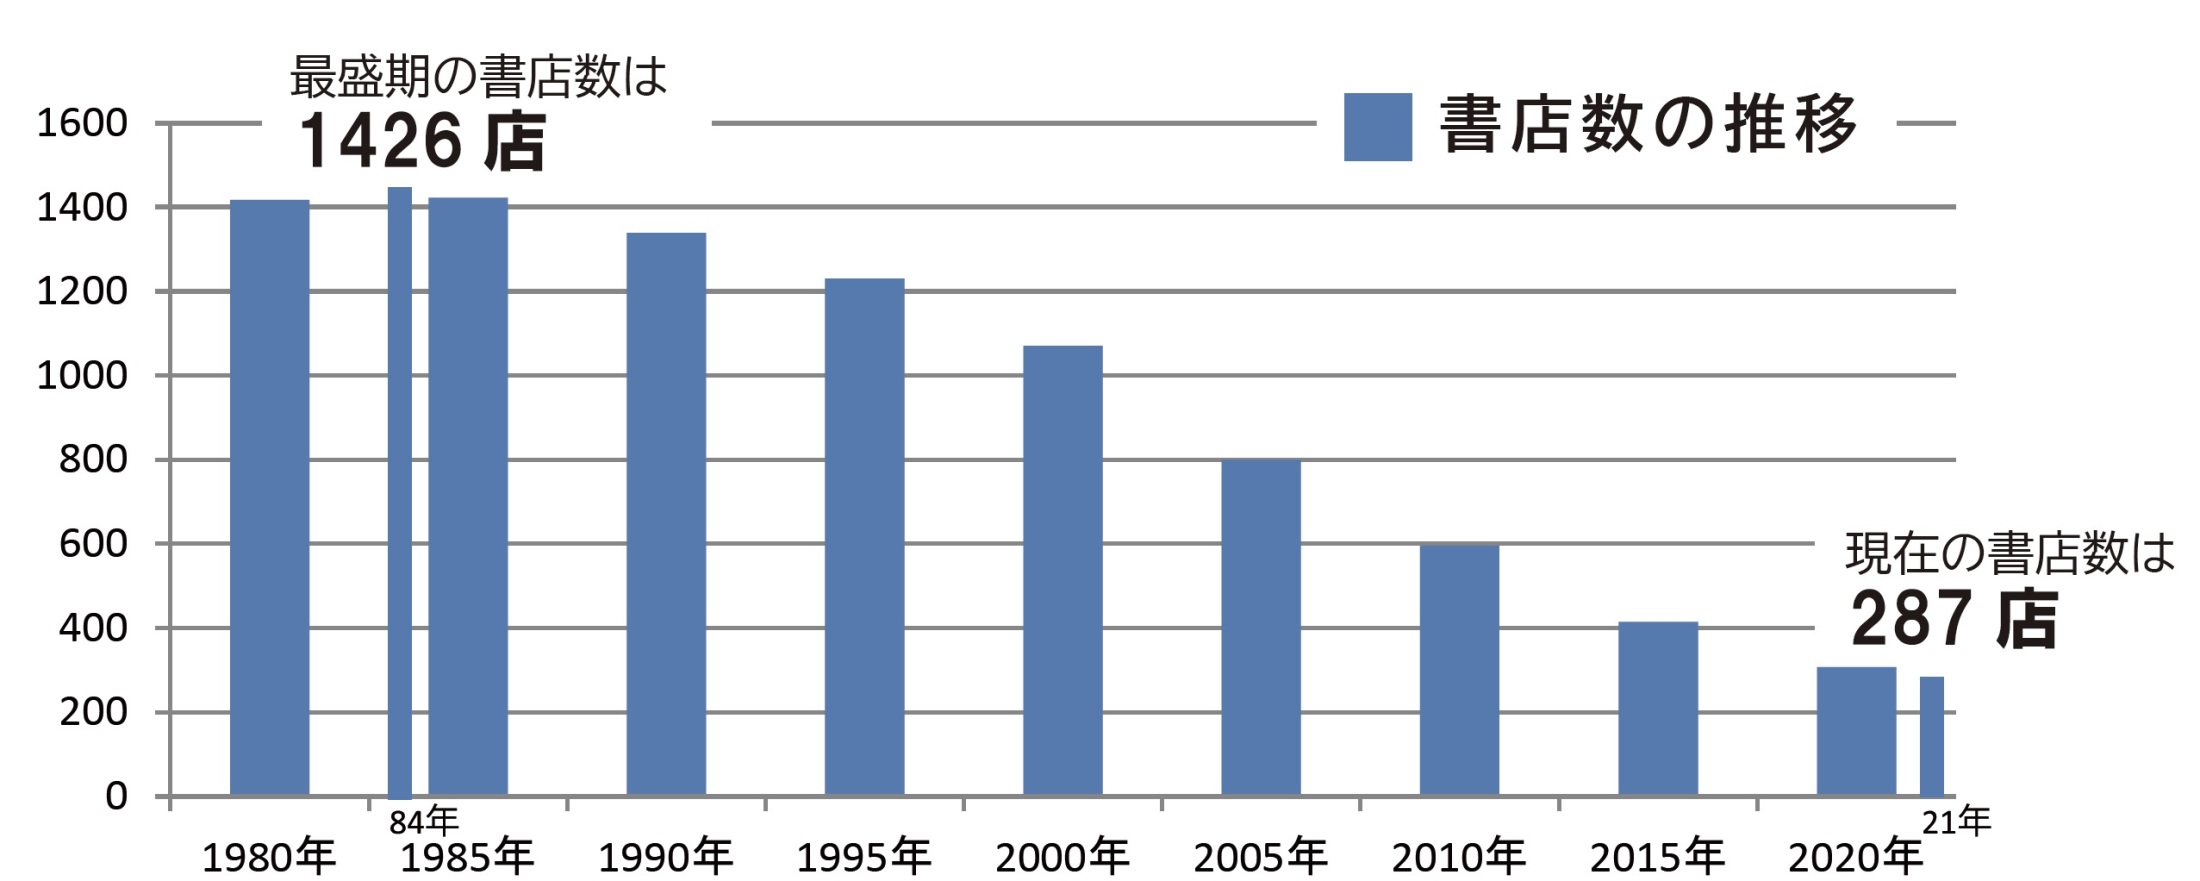 도쿄 내 서점 수를 나타낸 그래프. 1984년 14백 여곳의 서점이 영업하며 전성기를 누렸지만, 이후 점점 줄어 2021년엔 287곳 만이 남았어요. 